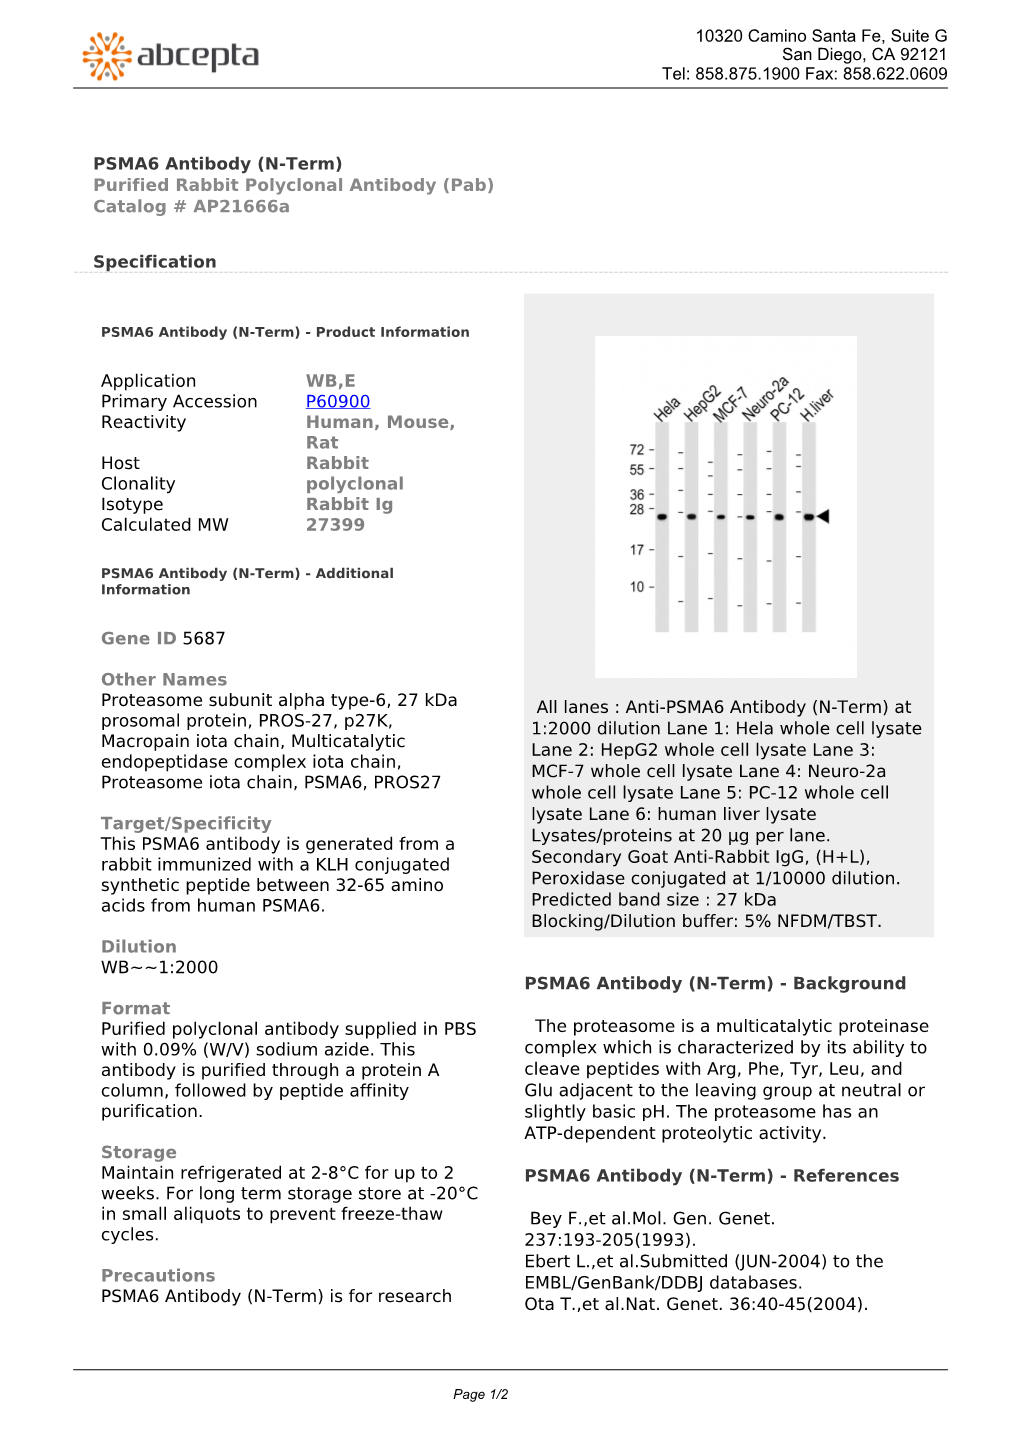 PSMA6 Antibody (N-Term) Purified Rabbit Polyclonal Antibody (Pab) Catalog # Ap21666a